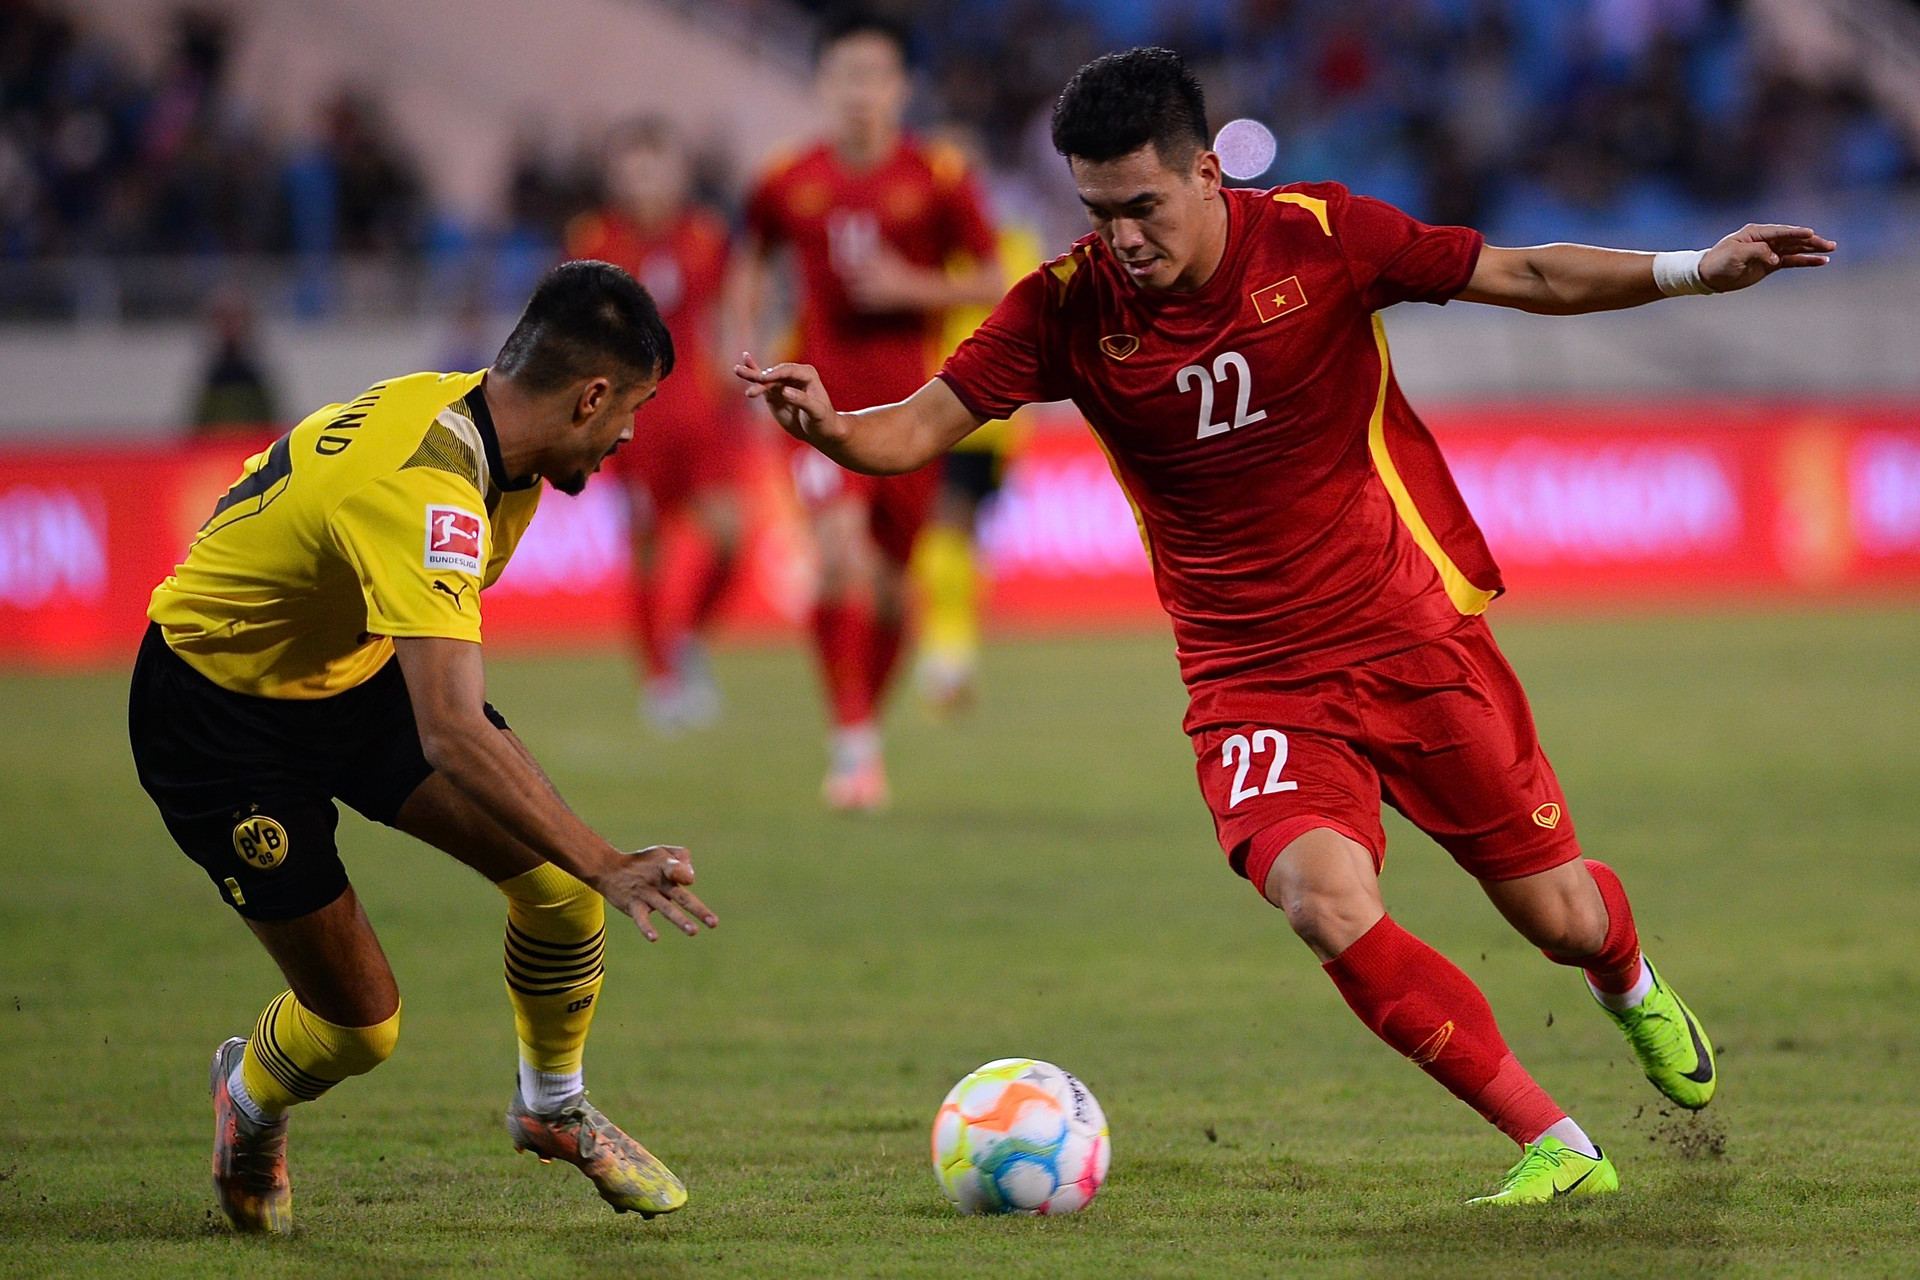 Thua tuyển Việt Nam, HLV Dortmund thất vọng hẹn tái đấu - 1